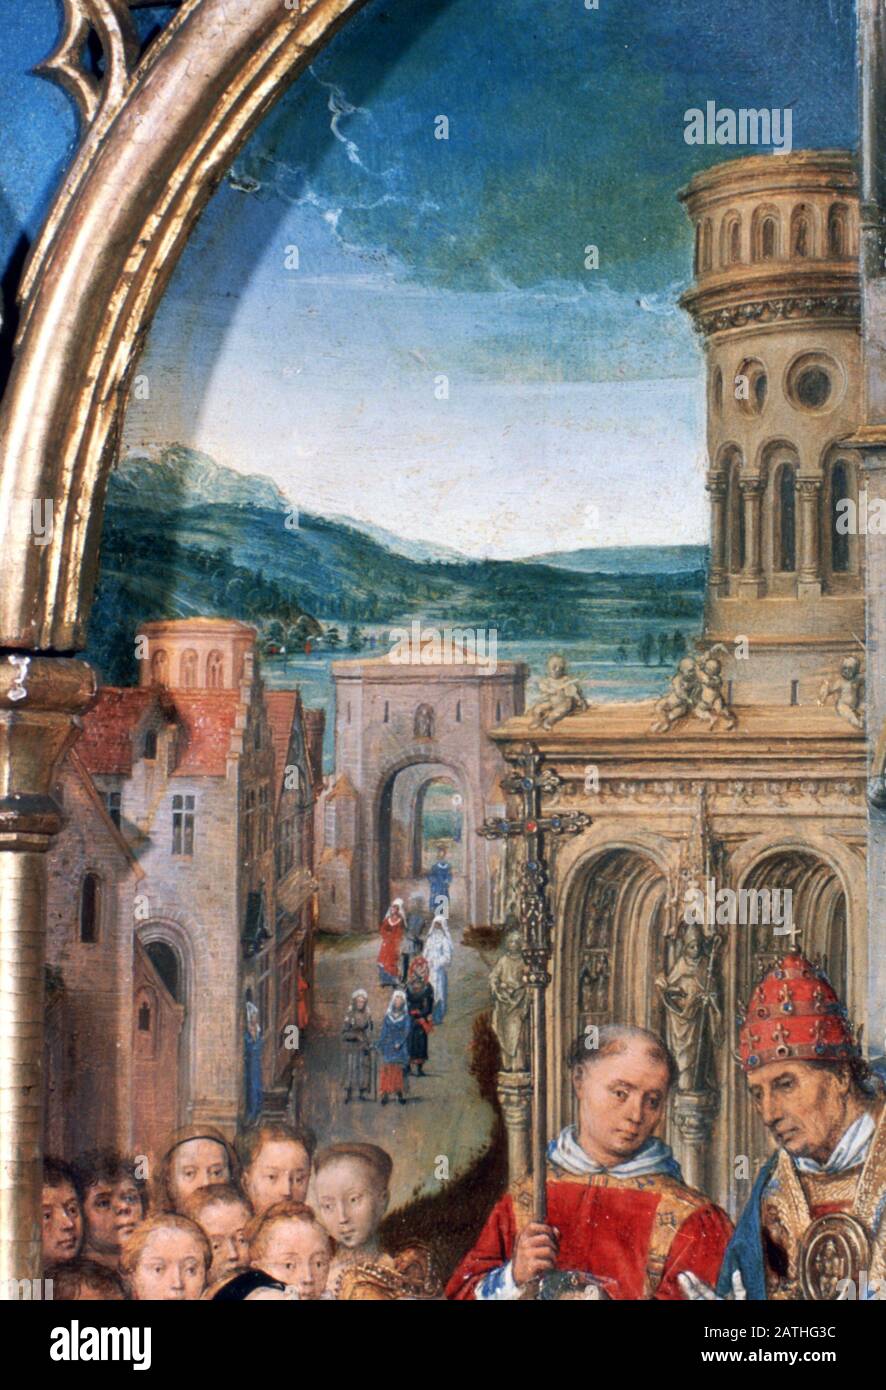 Sanctuaire St Ursula, Arrivée À Rome, Détail, 1489. Le Reliquaire De St Ursula, Musée Memling, Sint-Janshospitaal, Bruges. Banque D'Images